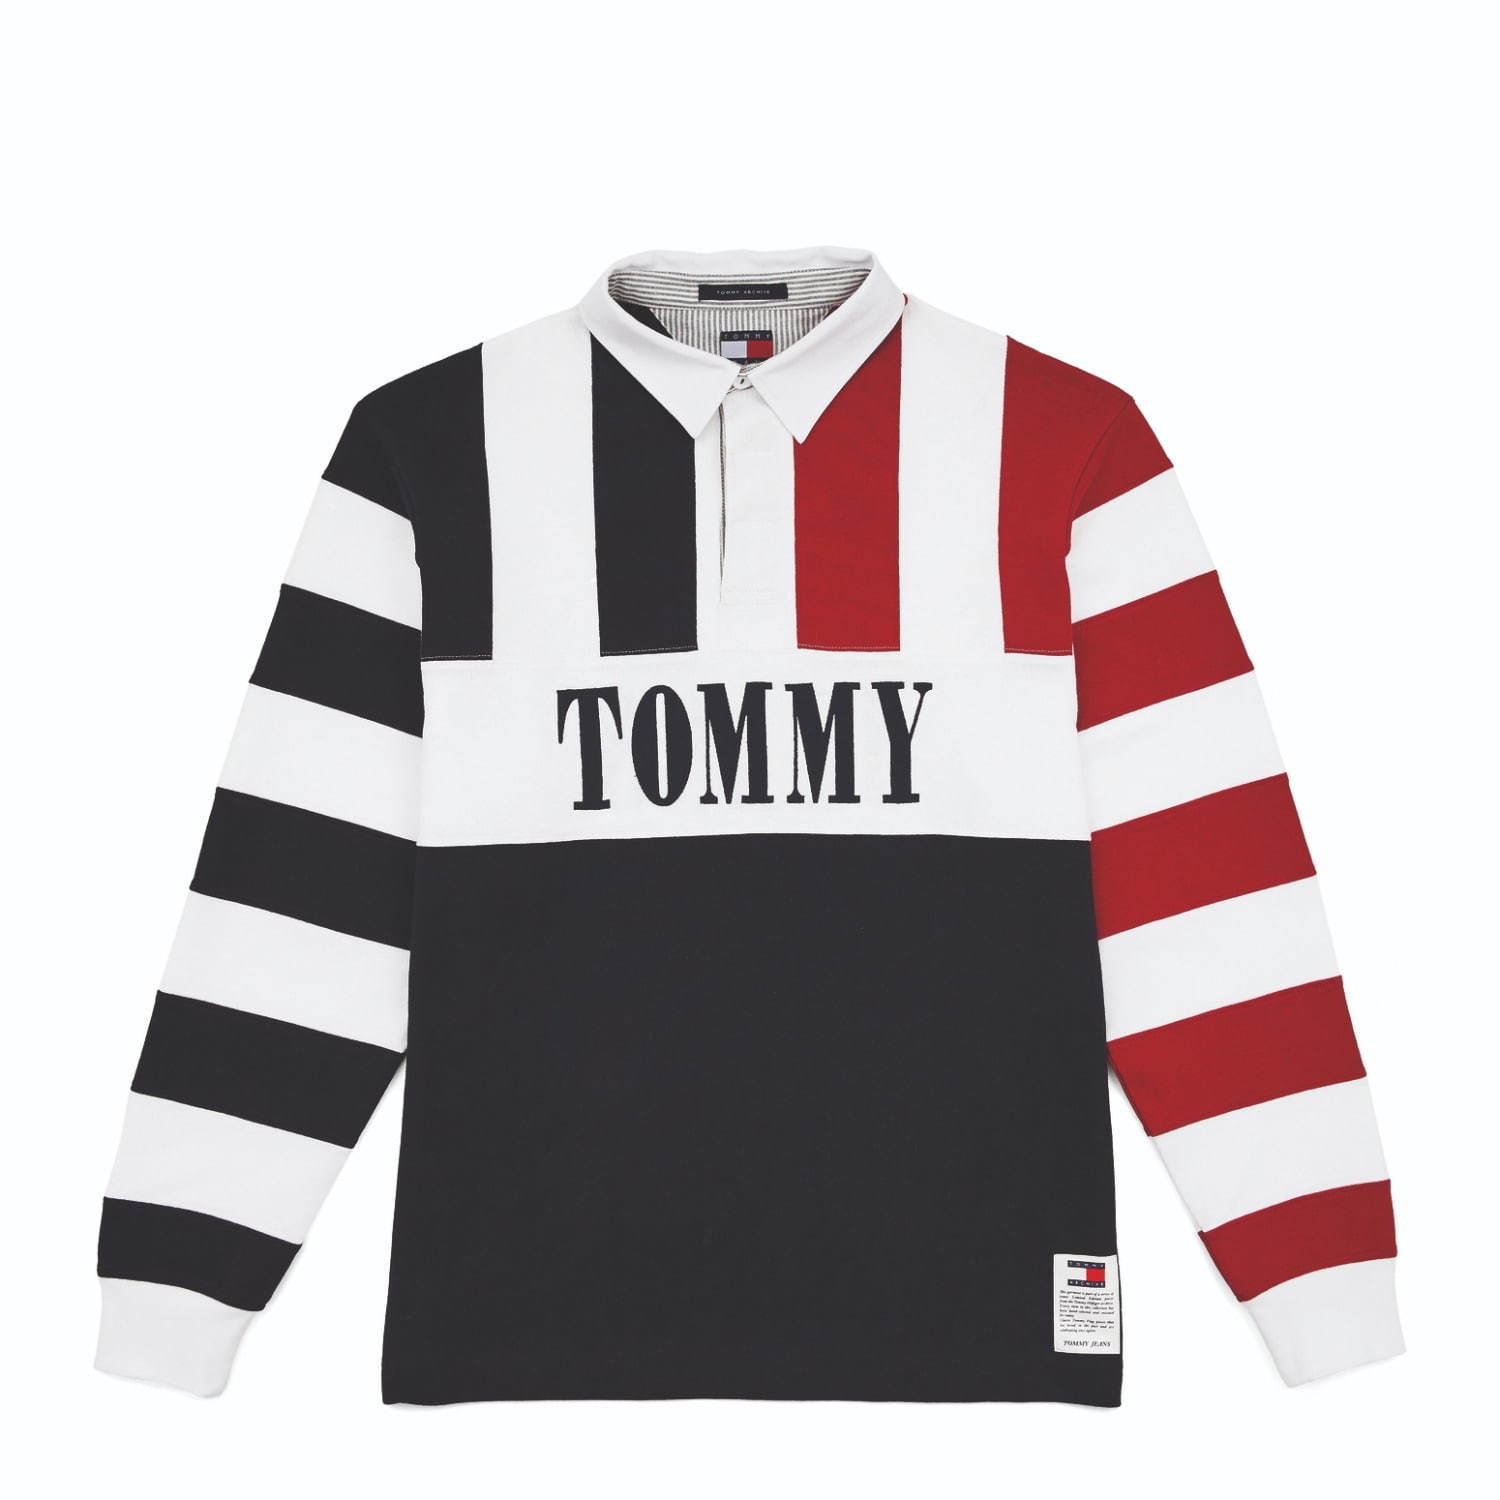 トミー ジーンズ、過去の名作Tシャツやスウェットを復刻 - アイコニックなロゴをメインに - ファッションプレス